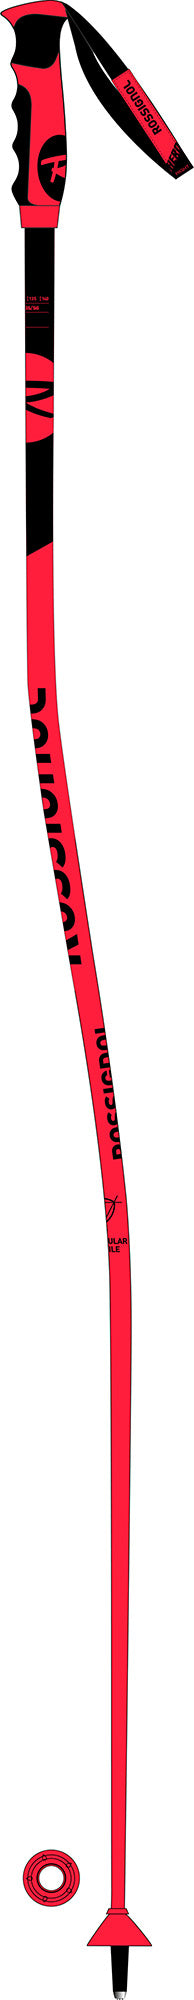 2020 Rossignol GS Ski Poles, also for Super G